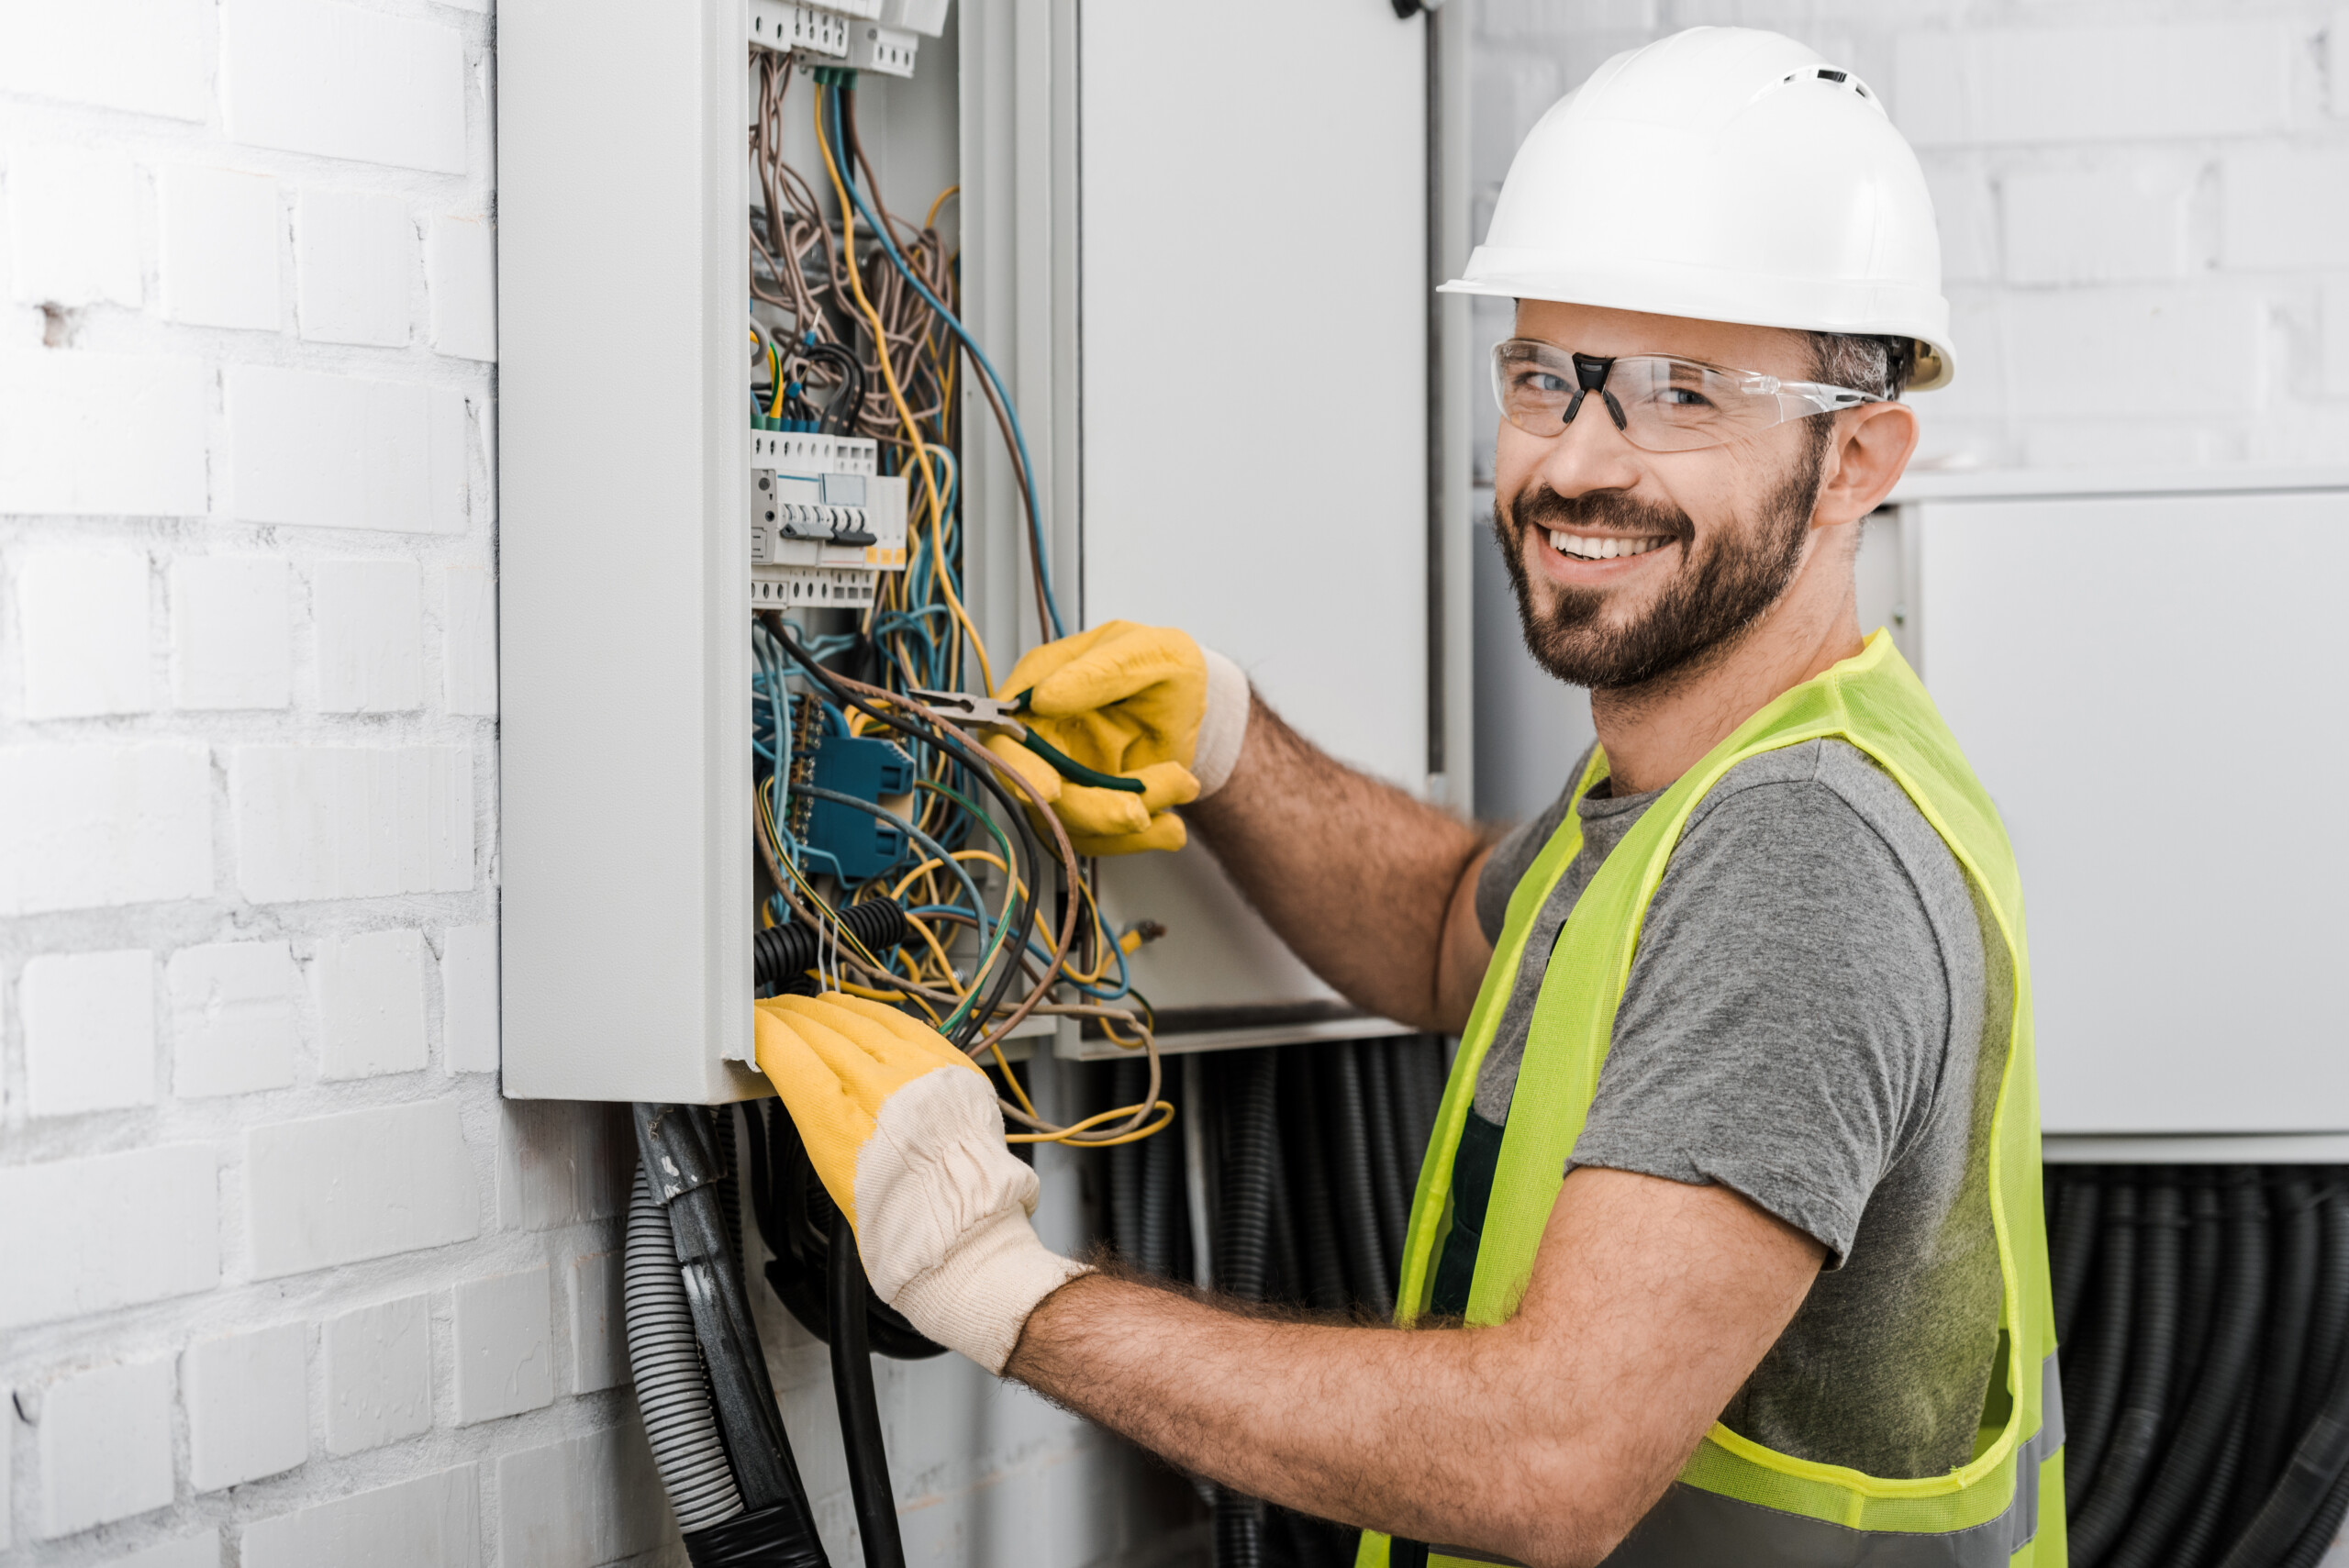 Jobbar du som elektriker?